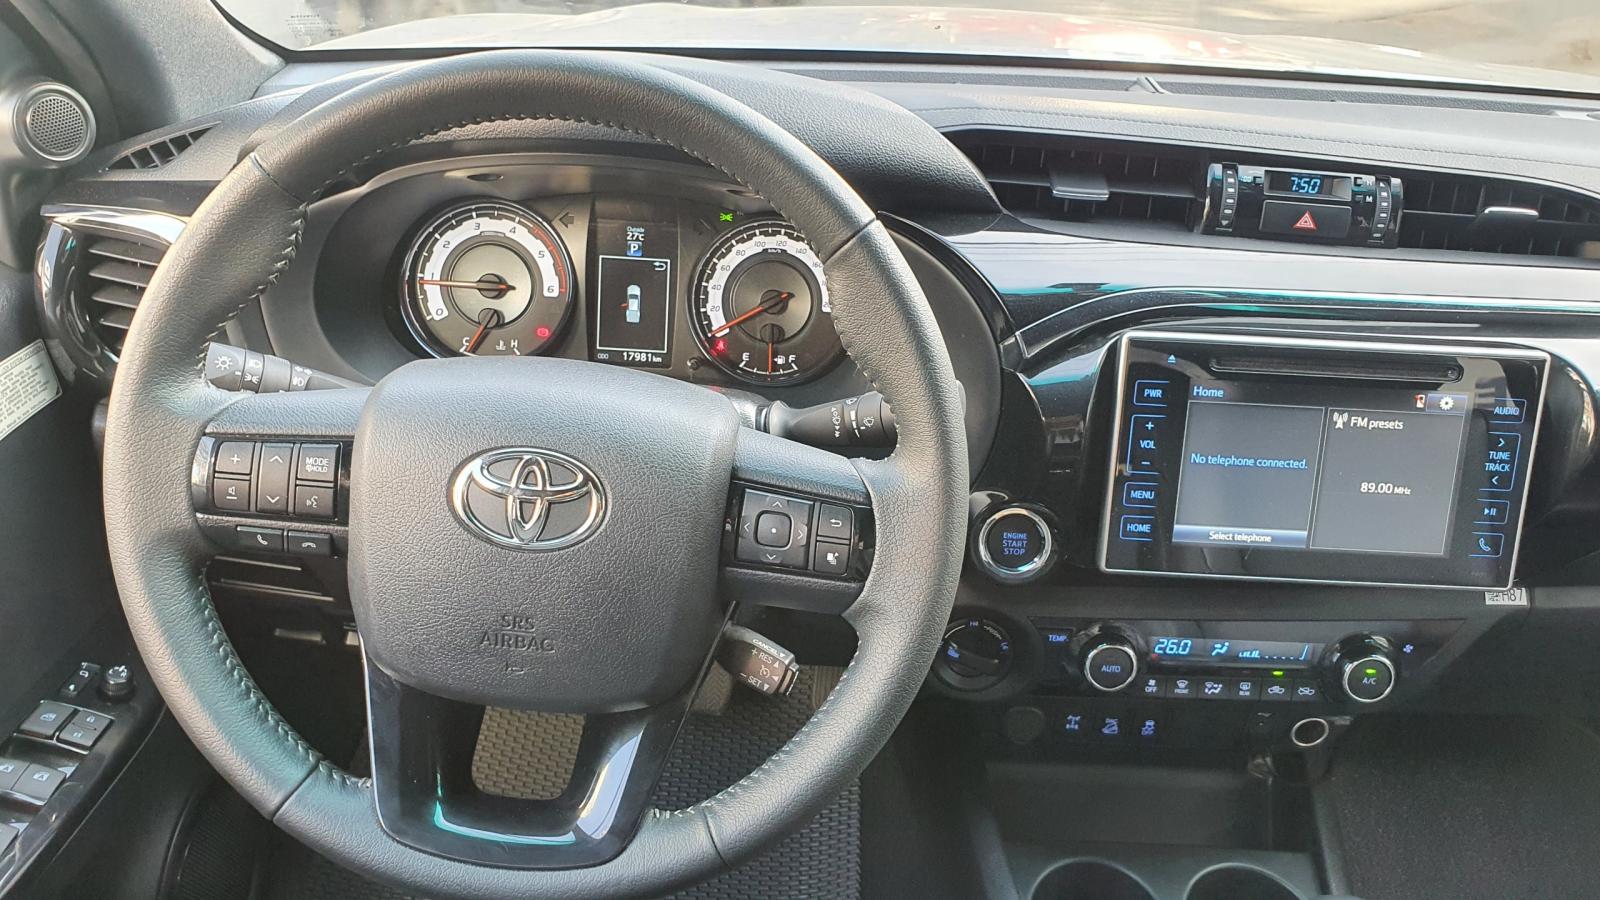 Toyota Hilux   2019 - Cần bán gấp Toyota Hilux 2.8 4x4 số tự động đời 2019, màu bạc lướt 17000km giá cực tốt